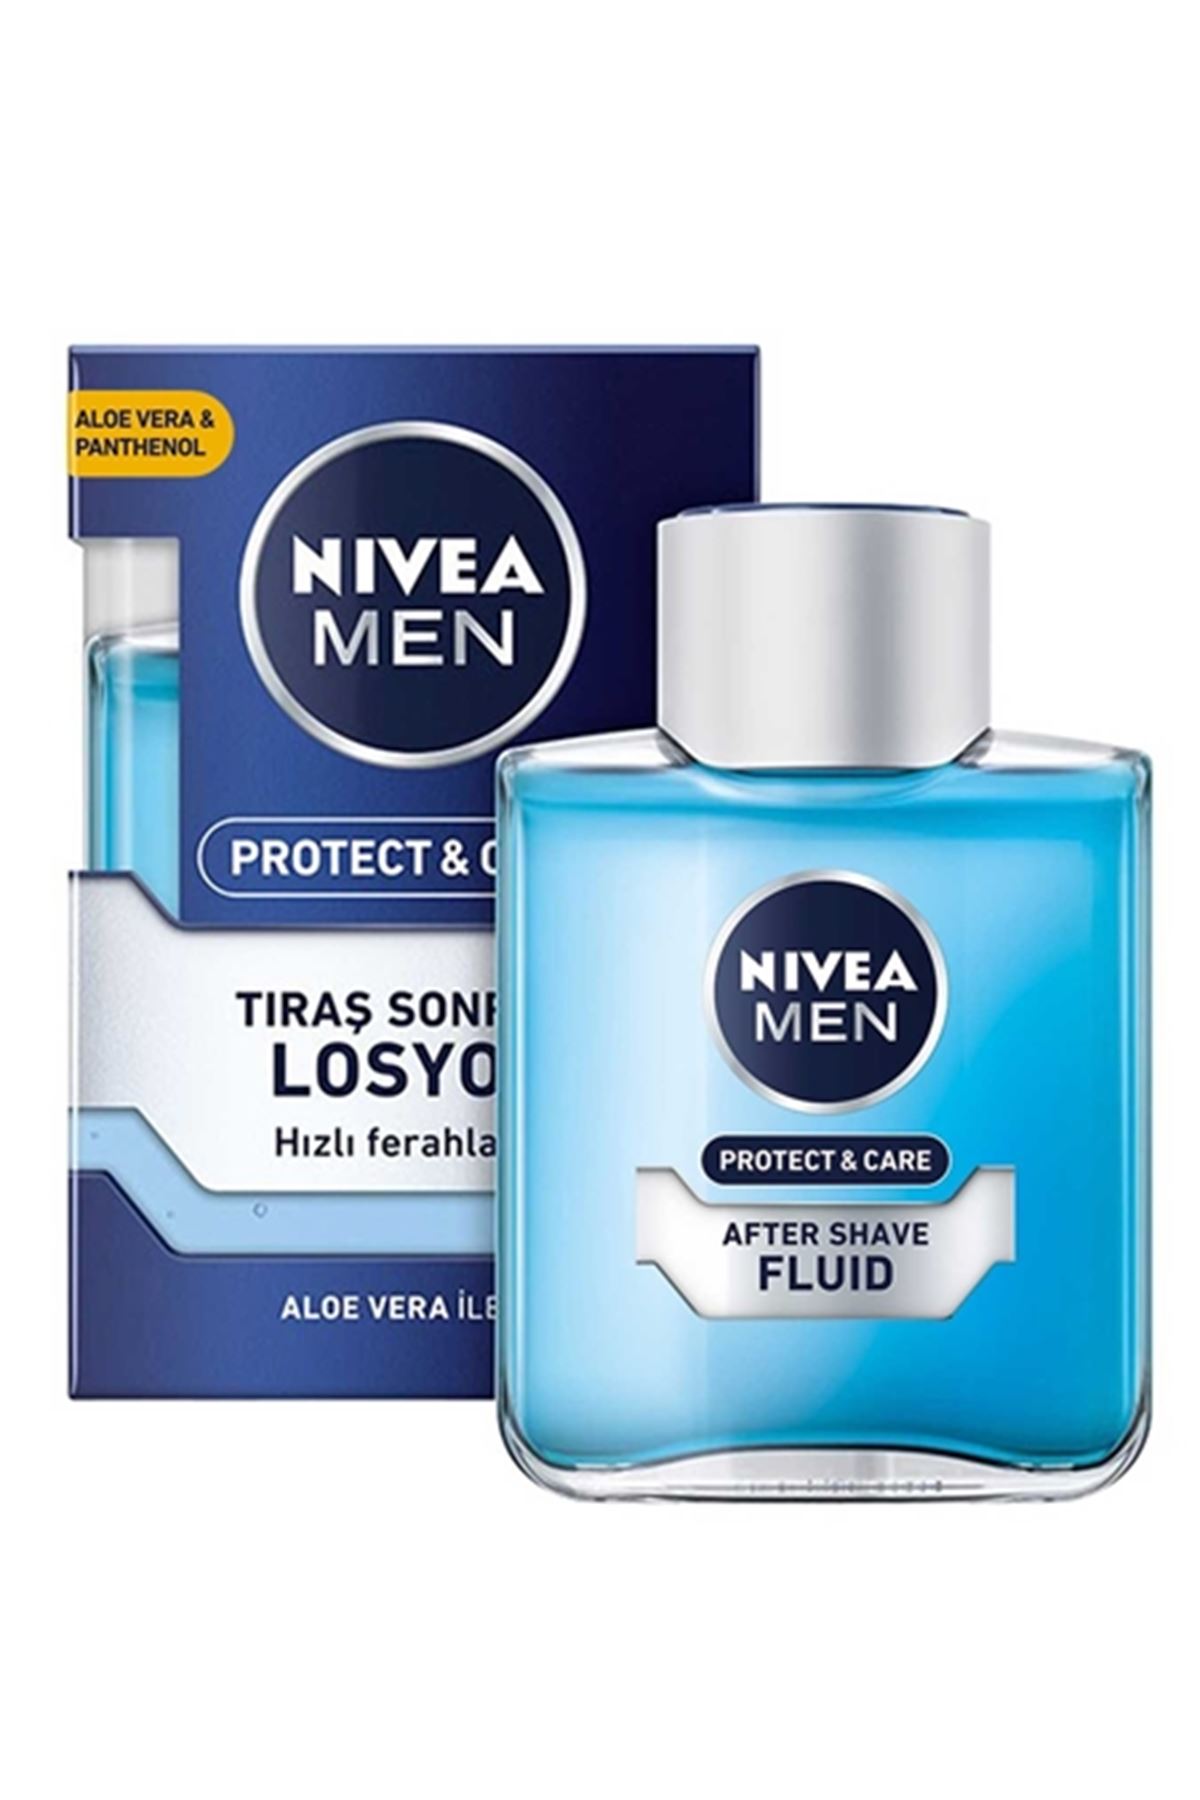 Nivea Men Traş Sonrası  Losyon 100 ml Protect & Care